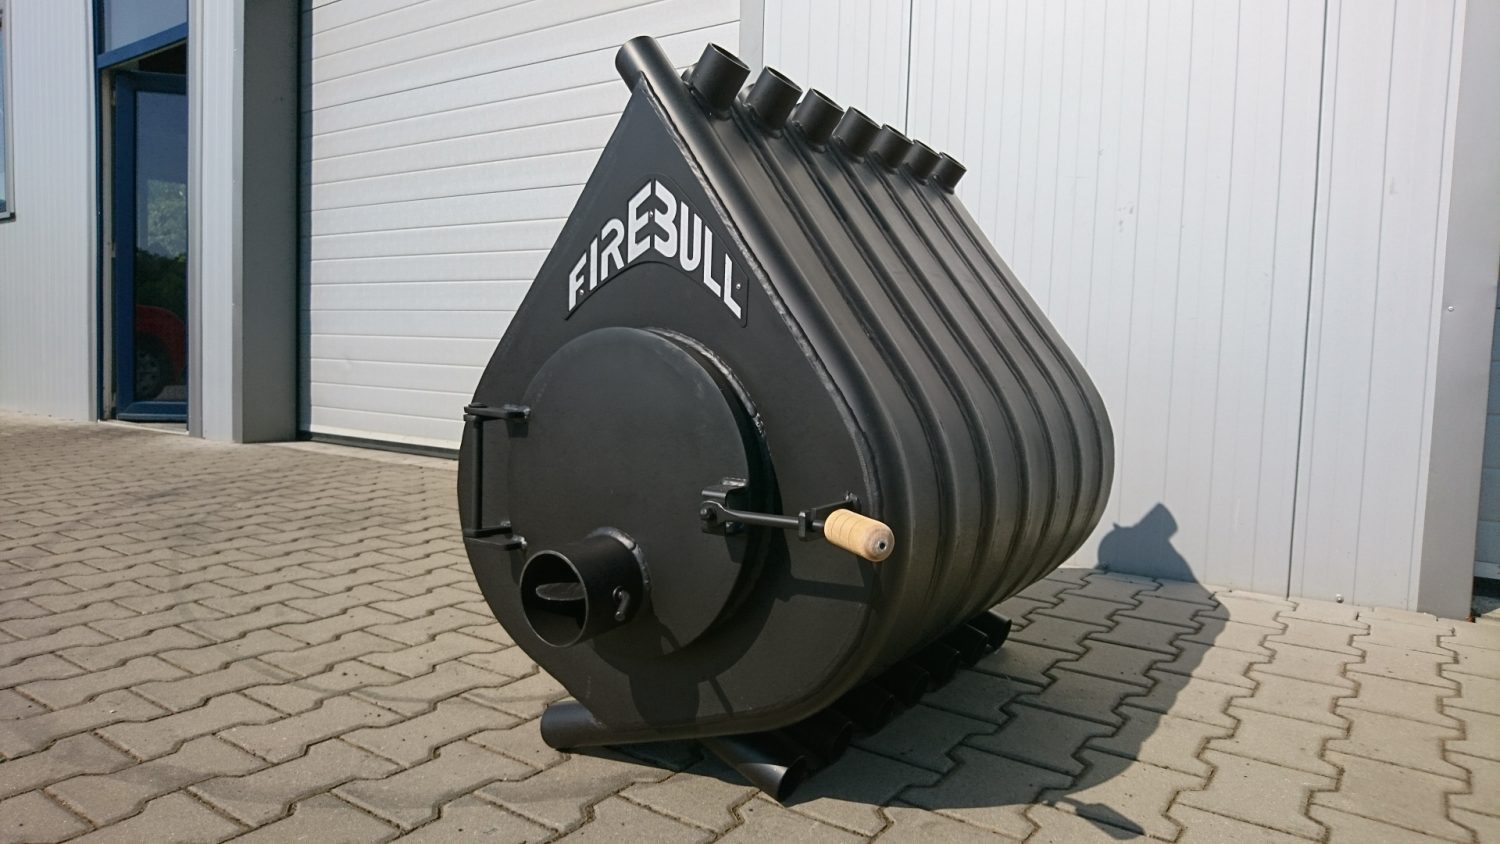 Horkovzdušná kamna Firebull představují výkonné topidlo i do větších prostor. Verze Mini vytopí menší plochu. Foto: Firebull